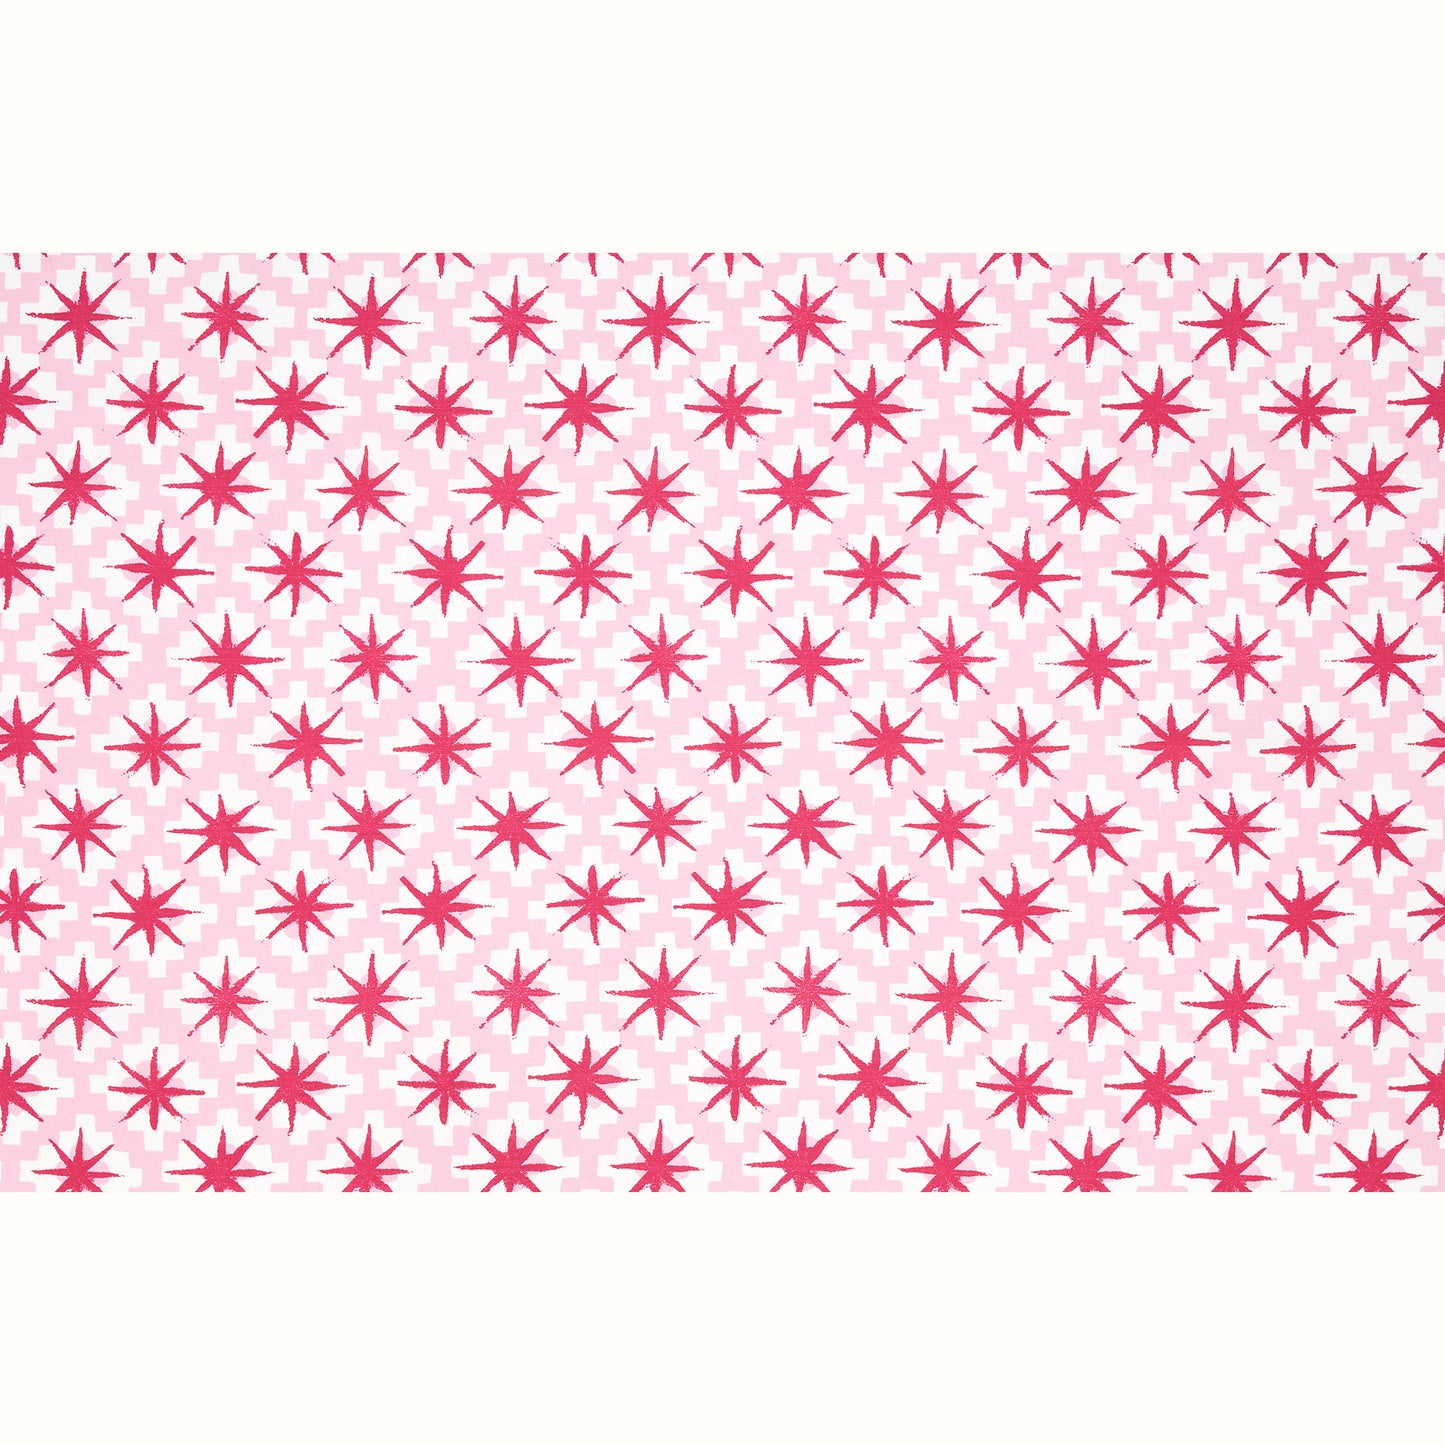 Starburst Outdoor - Raspberry/Pink